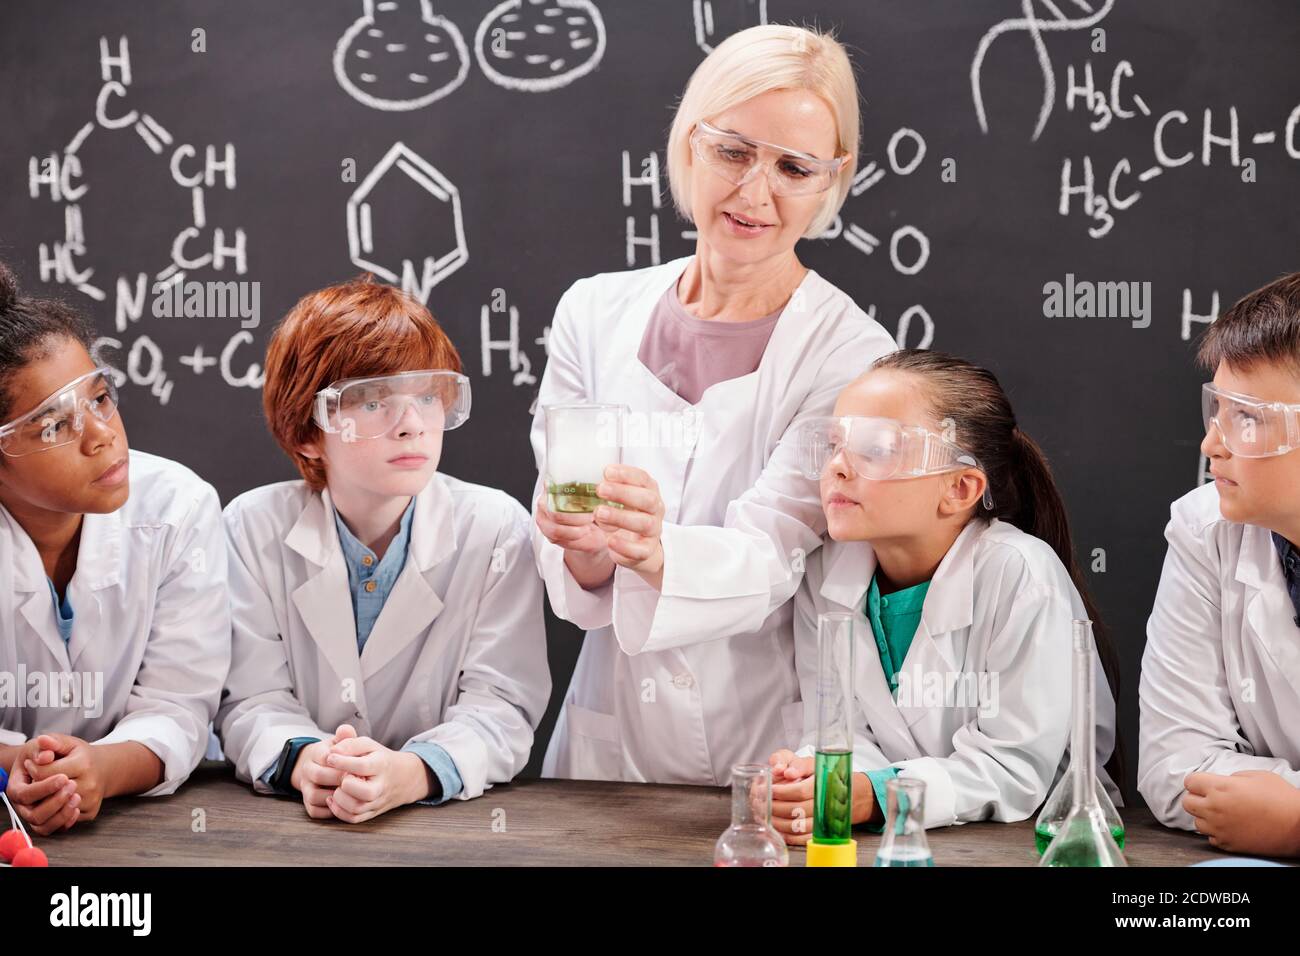 Jeune professeur de chimie montrant son mélange de deux élèves substances chimiques Banque D'Images